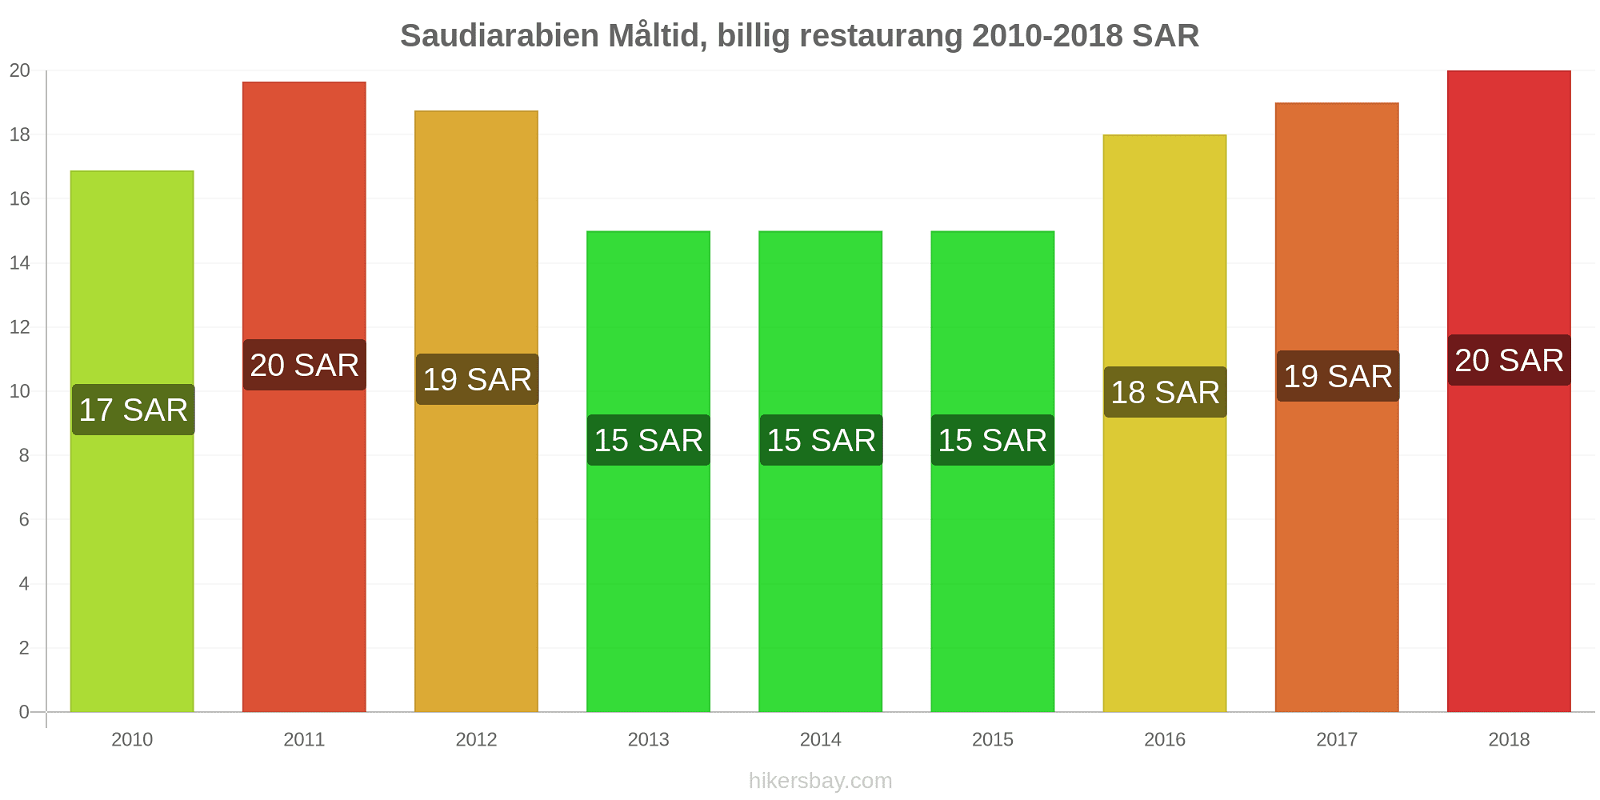 Saudiarabien prisändringar Måltid i en billig restaurang hikersbay.com